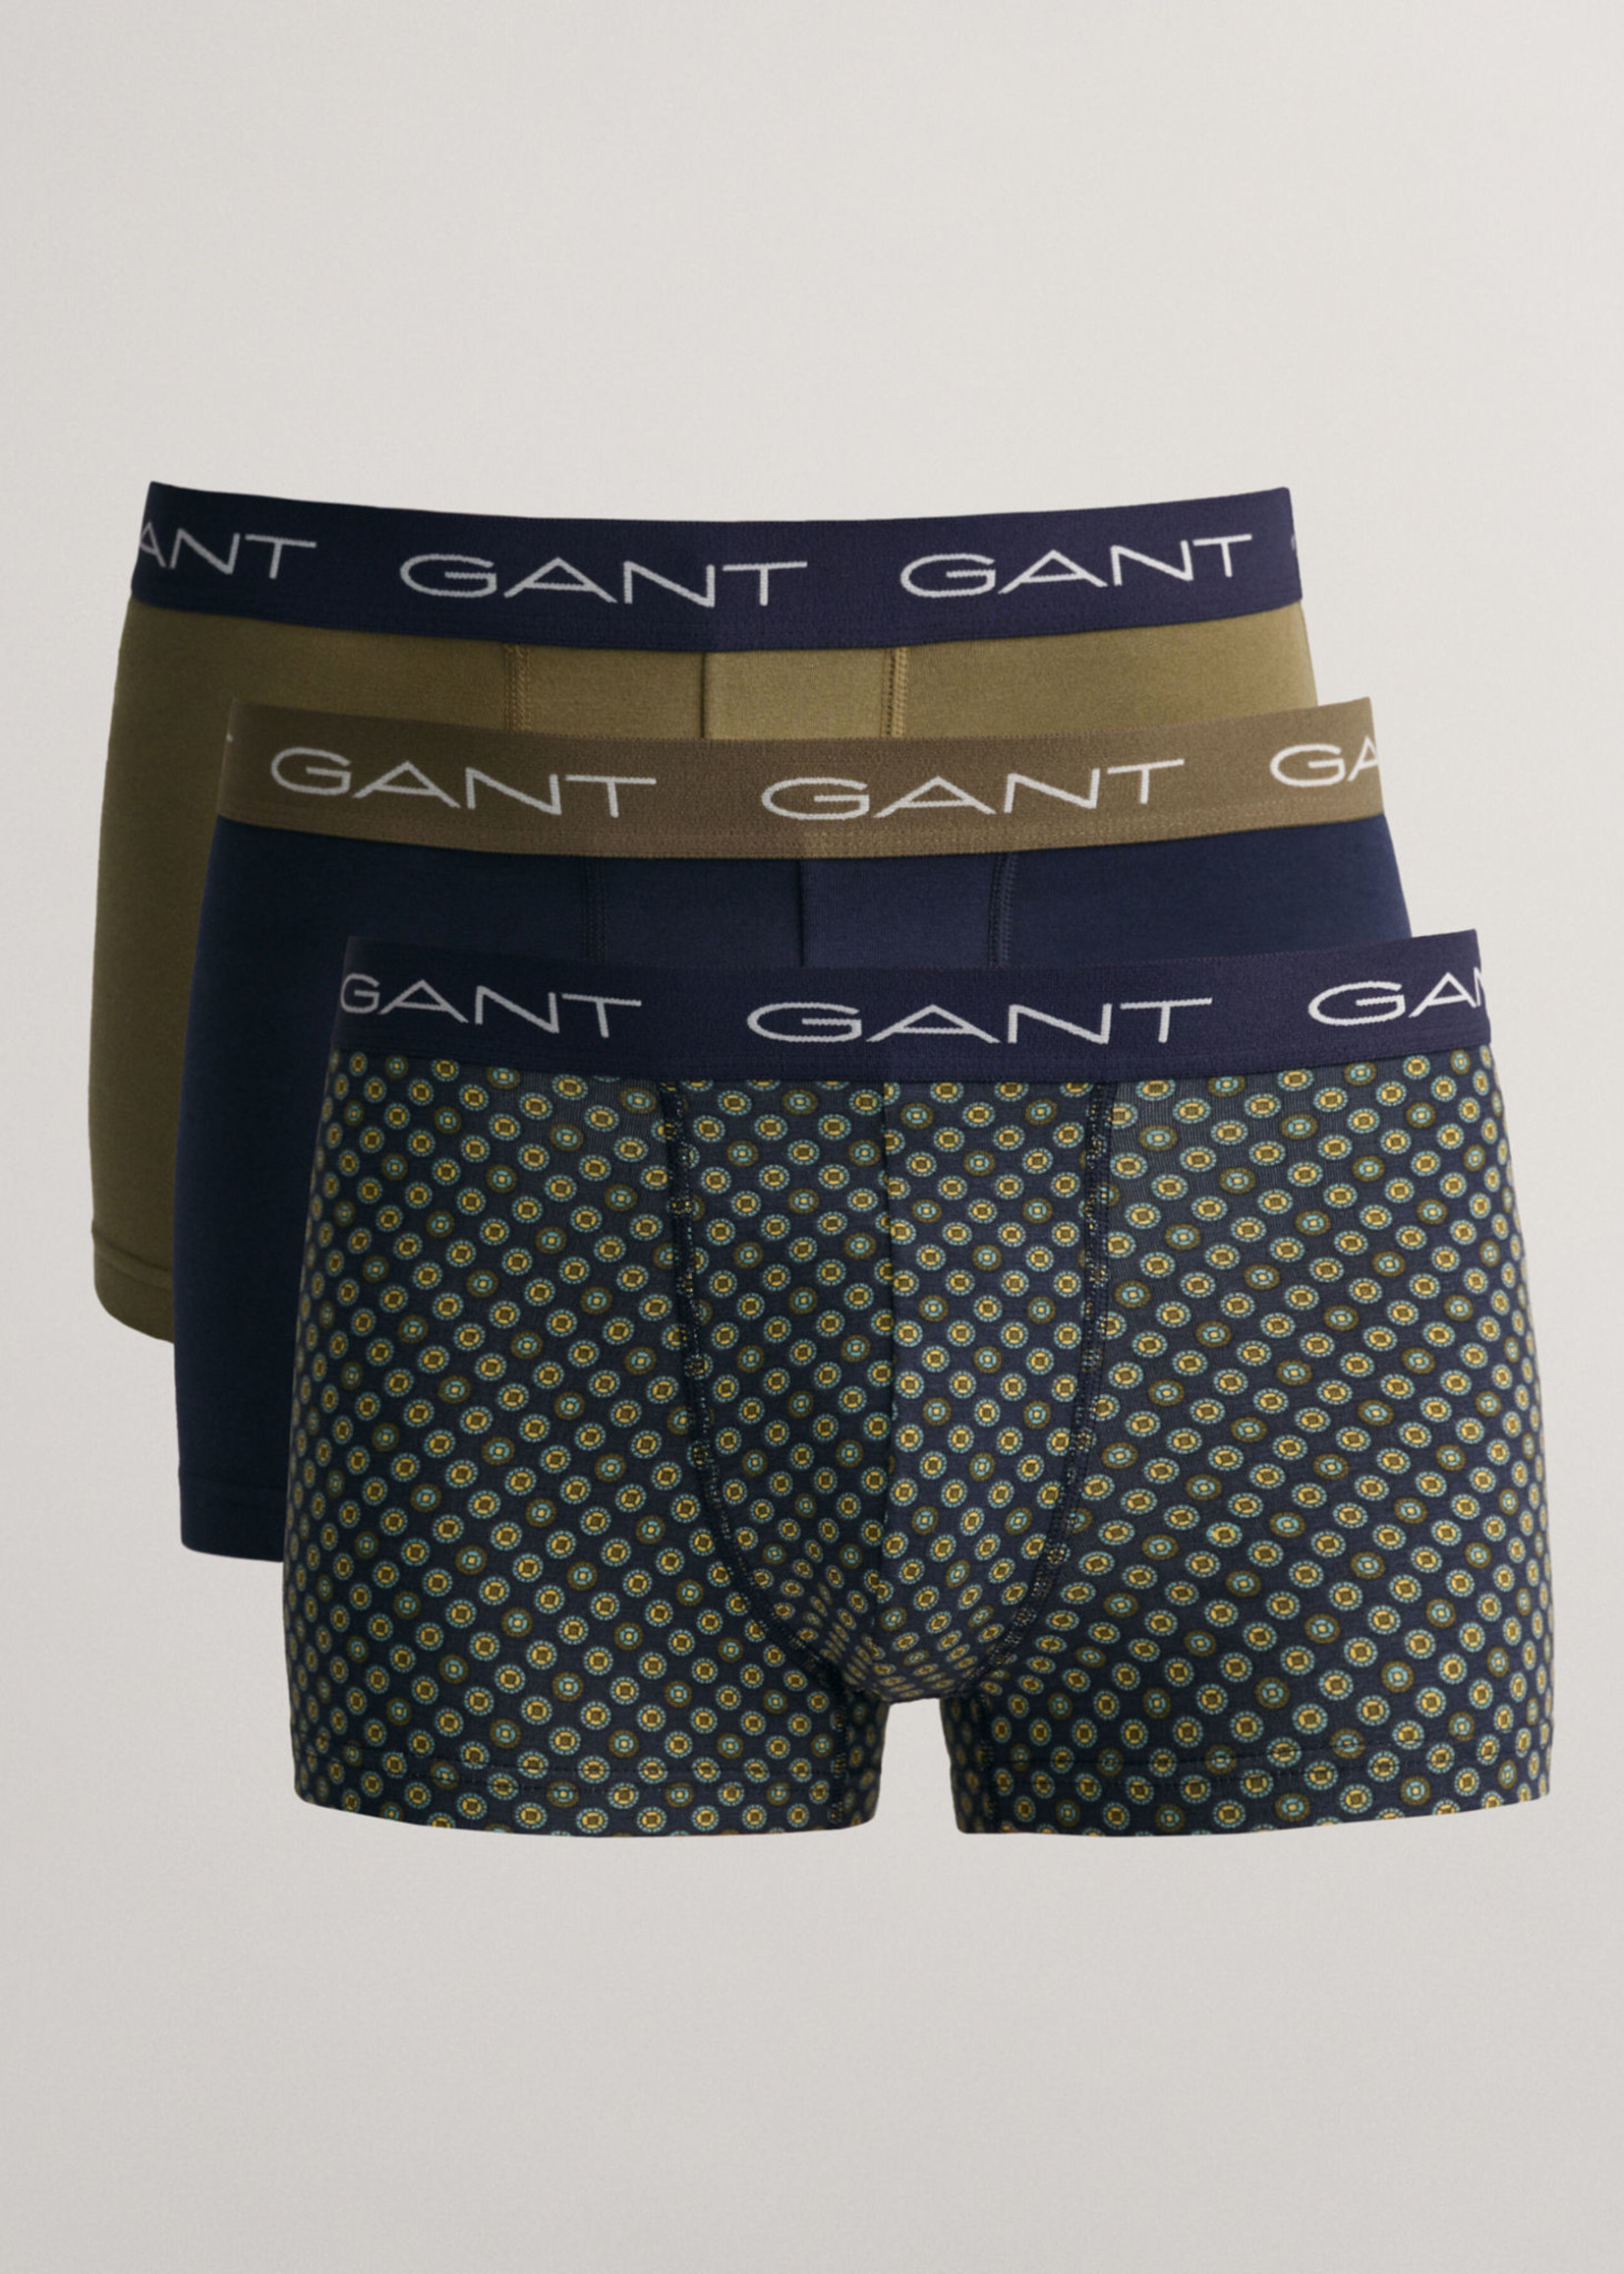 GANT Set van drie boxershorts met Foulard-print in geschenkverpakking